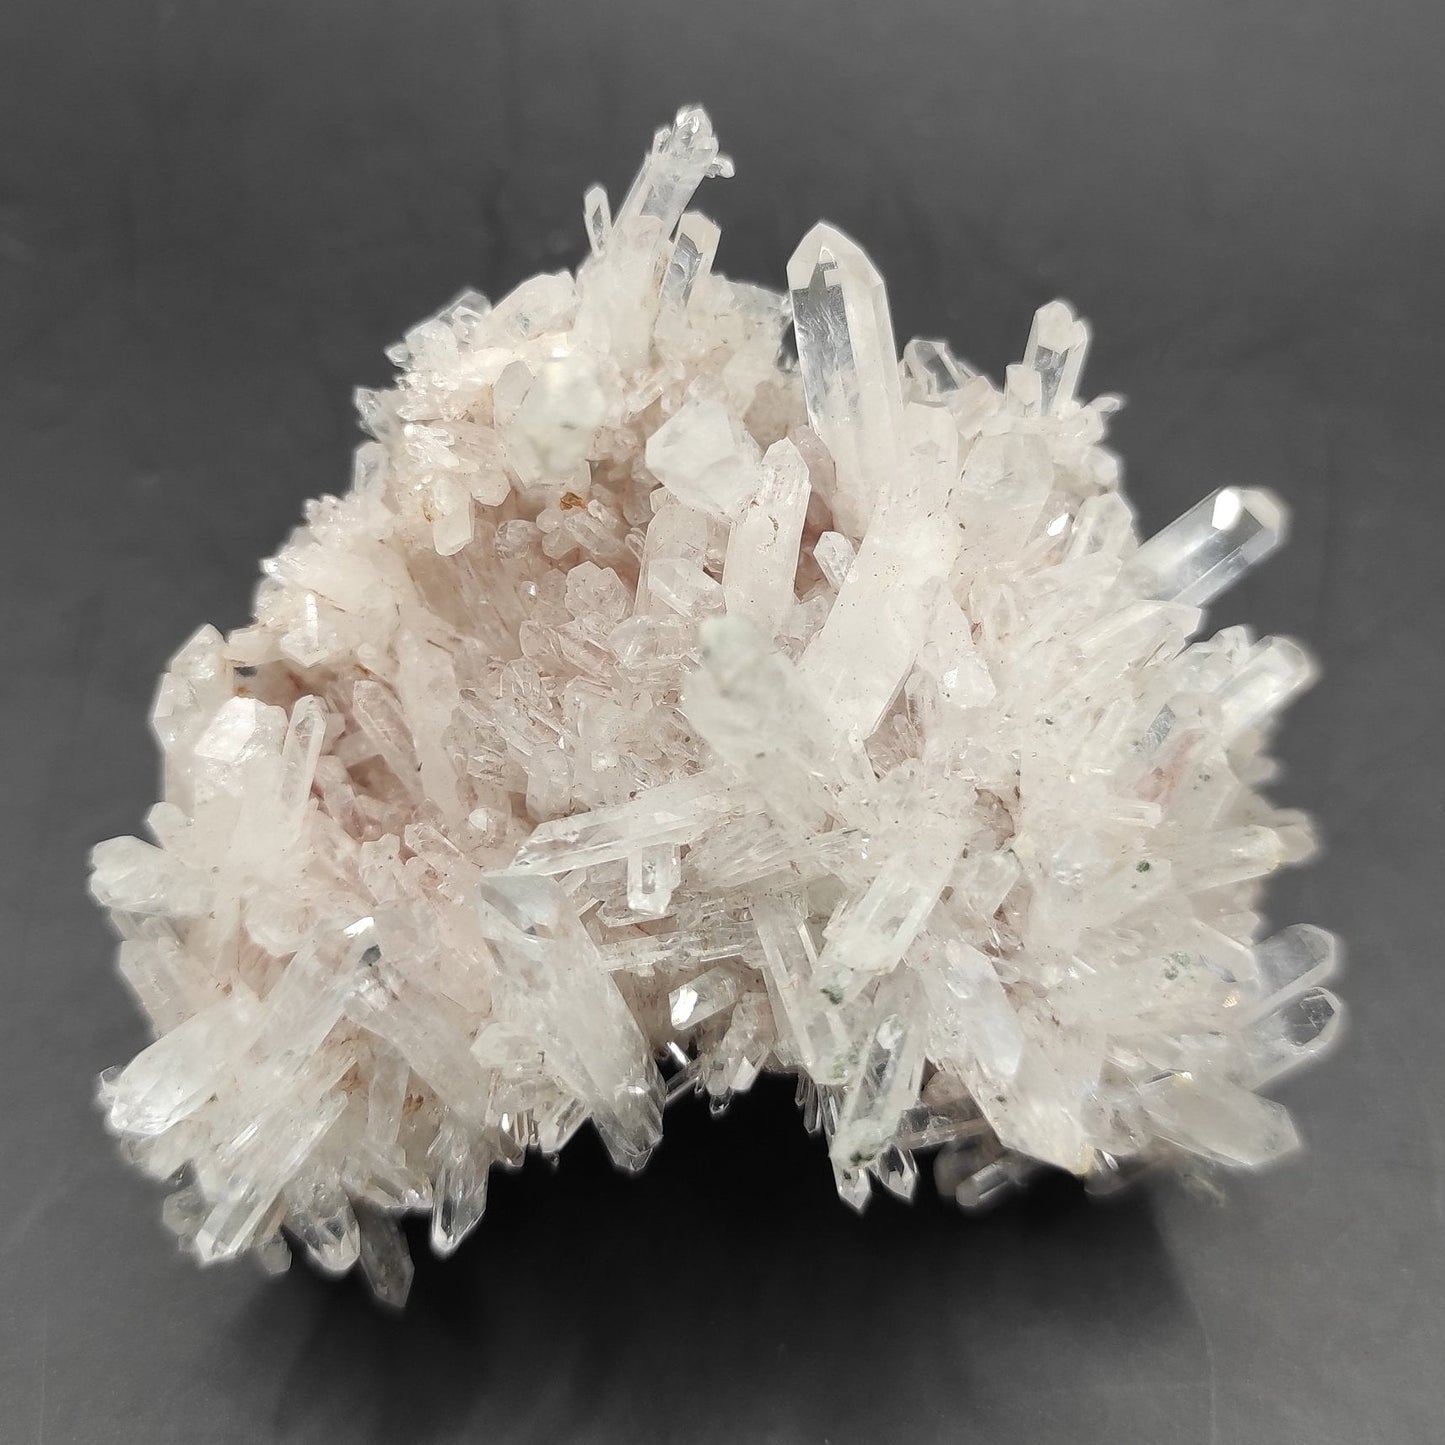 77g Clear Quartz Crystal Specimen - Clear Quartz Cluster from Belleza, Colombia - Quartz Crystals - Raw Quartz